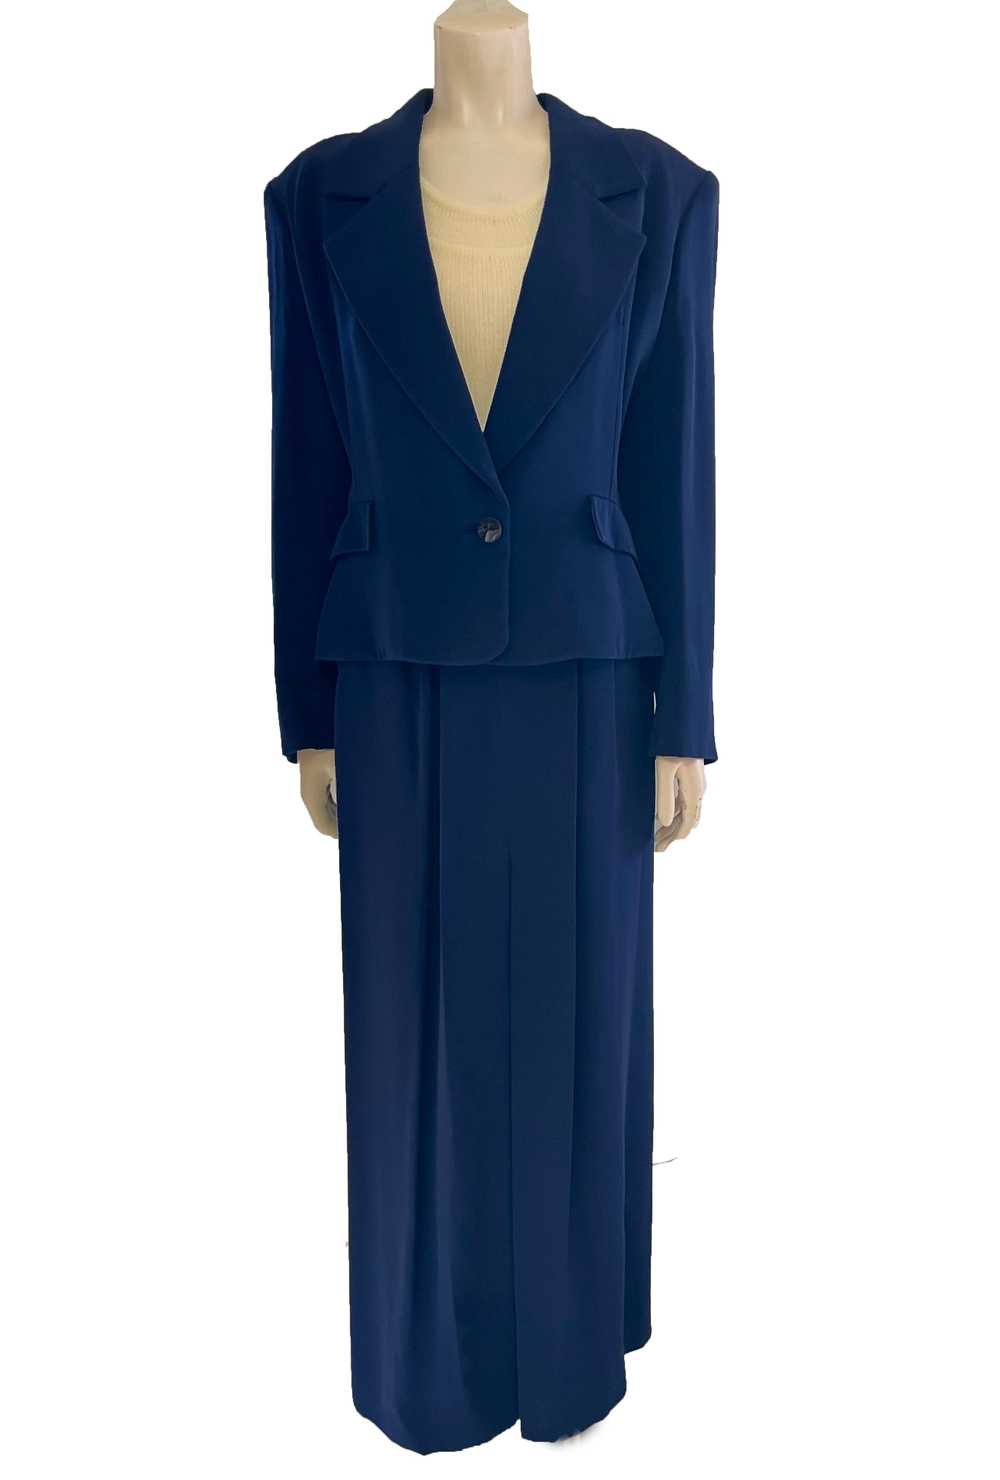 1990s Yves Saint Laurent Deadstock Skirt Suit - image 1